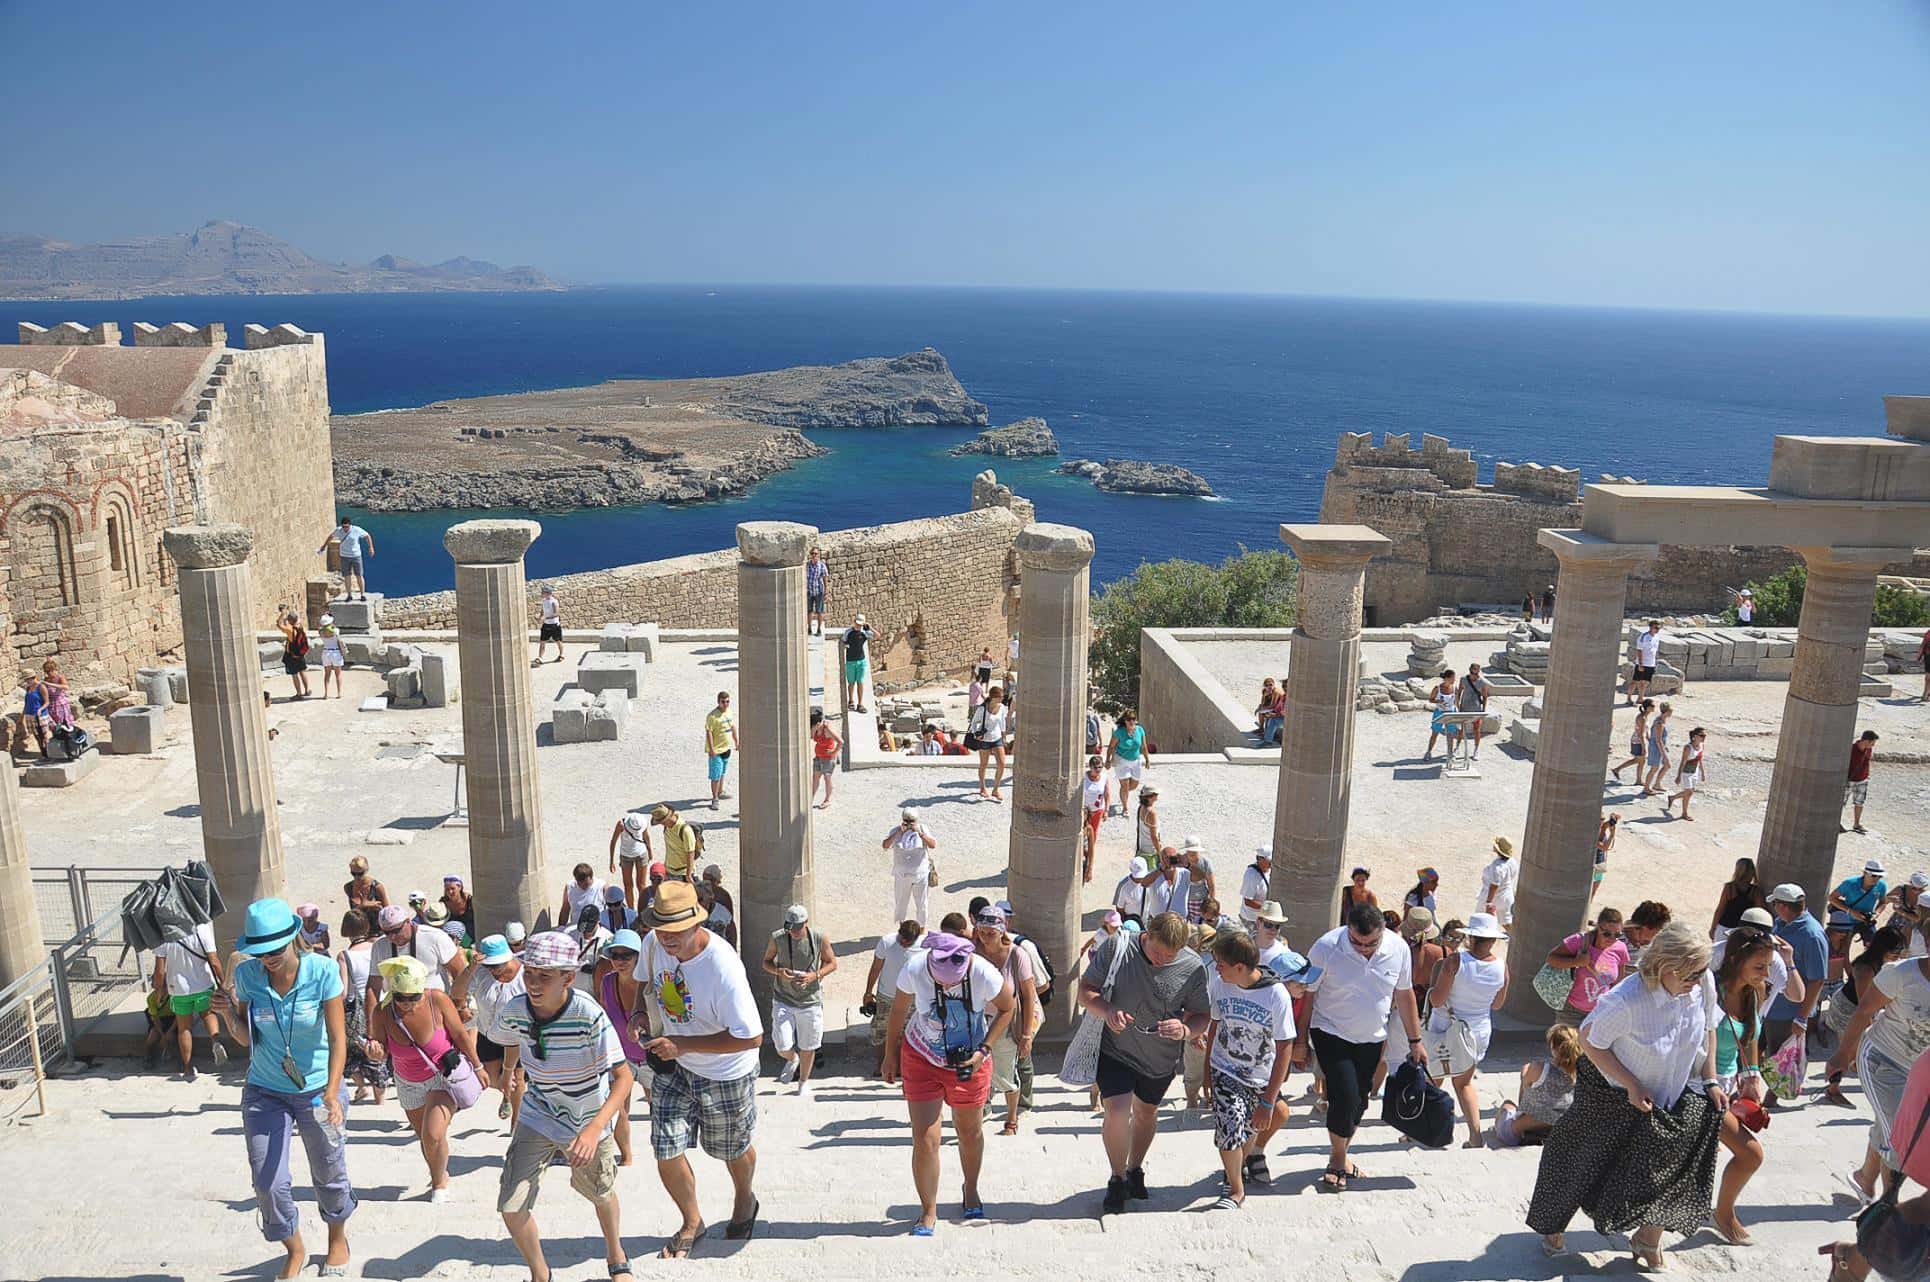 Экскурсии в Греции